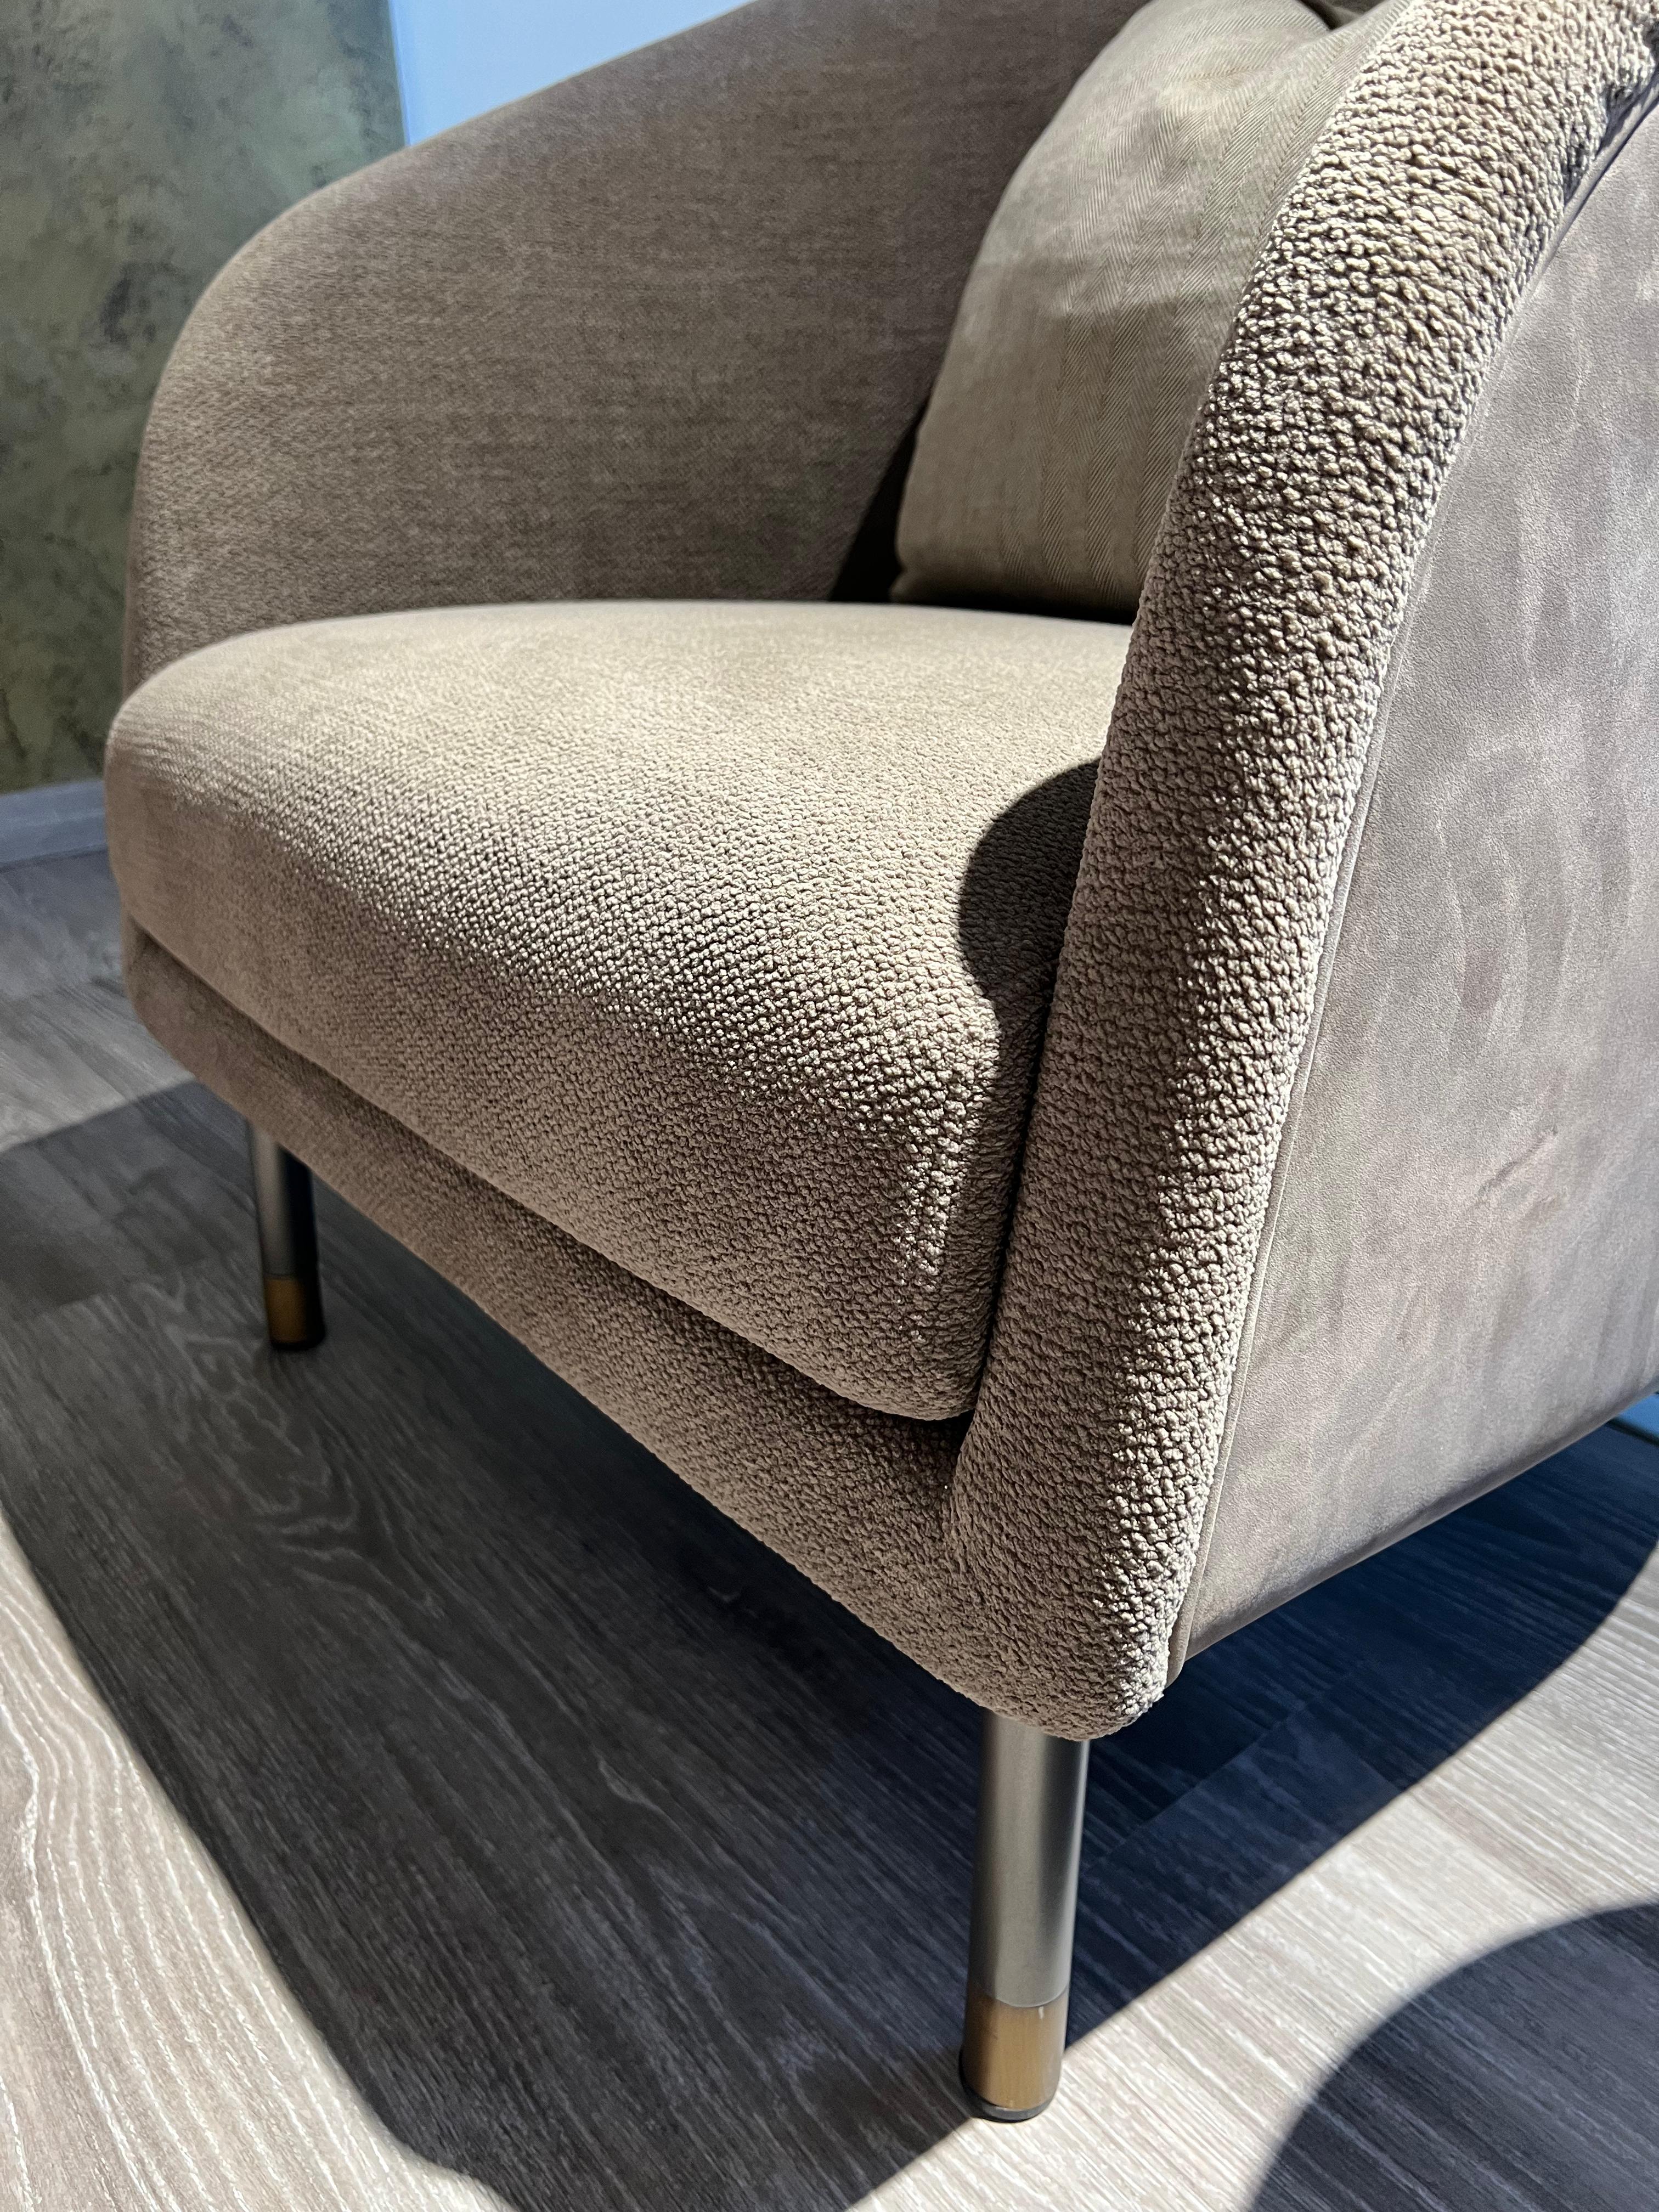 Le fauteuil Ralph, pilier de la collection Hoffman, est constitué d'une coque rigide en bois qui peut être revêtue d'une infinité de combinaisons de tissus ou de cuirs ; les coussins intérieurs peuvent être recouverts d'une infinie variété de